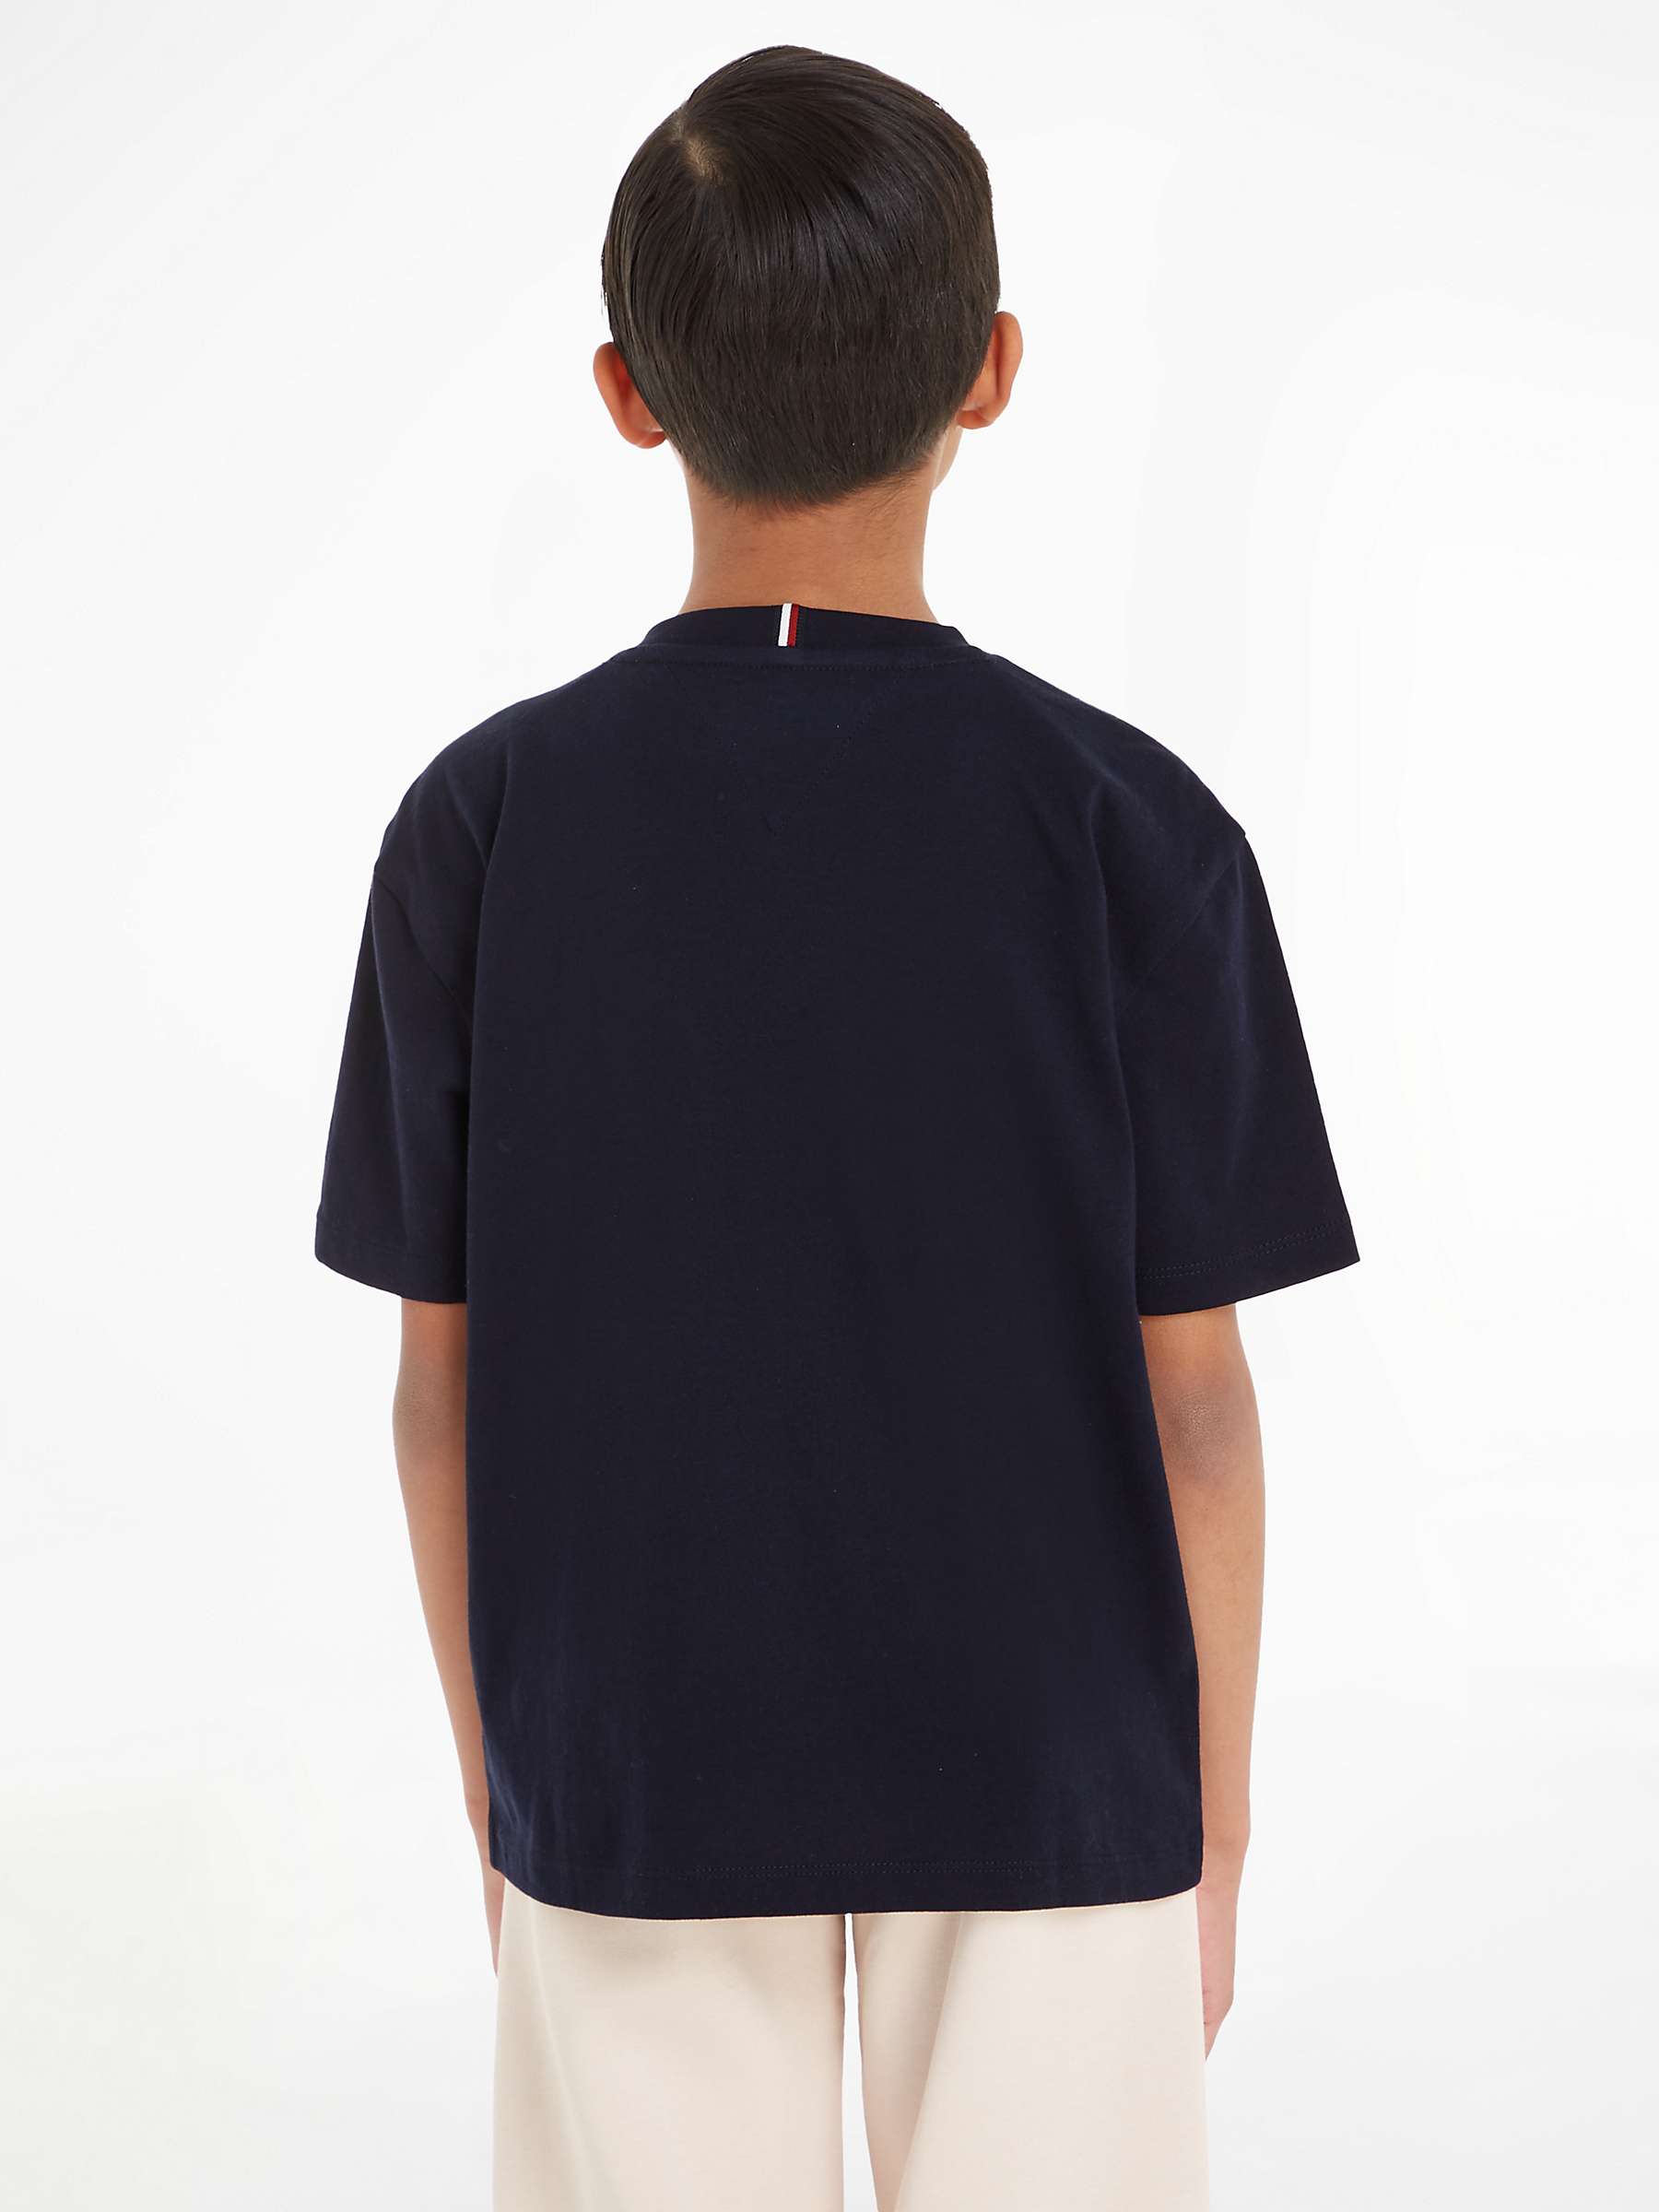 Buy Tommy Hilfiger Kids' Essential Logo Short Sleeve T-Shirt Online at johnlewis.com